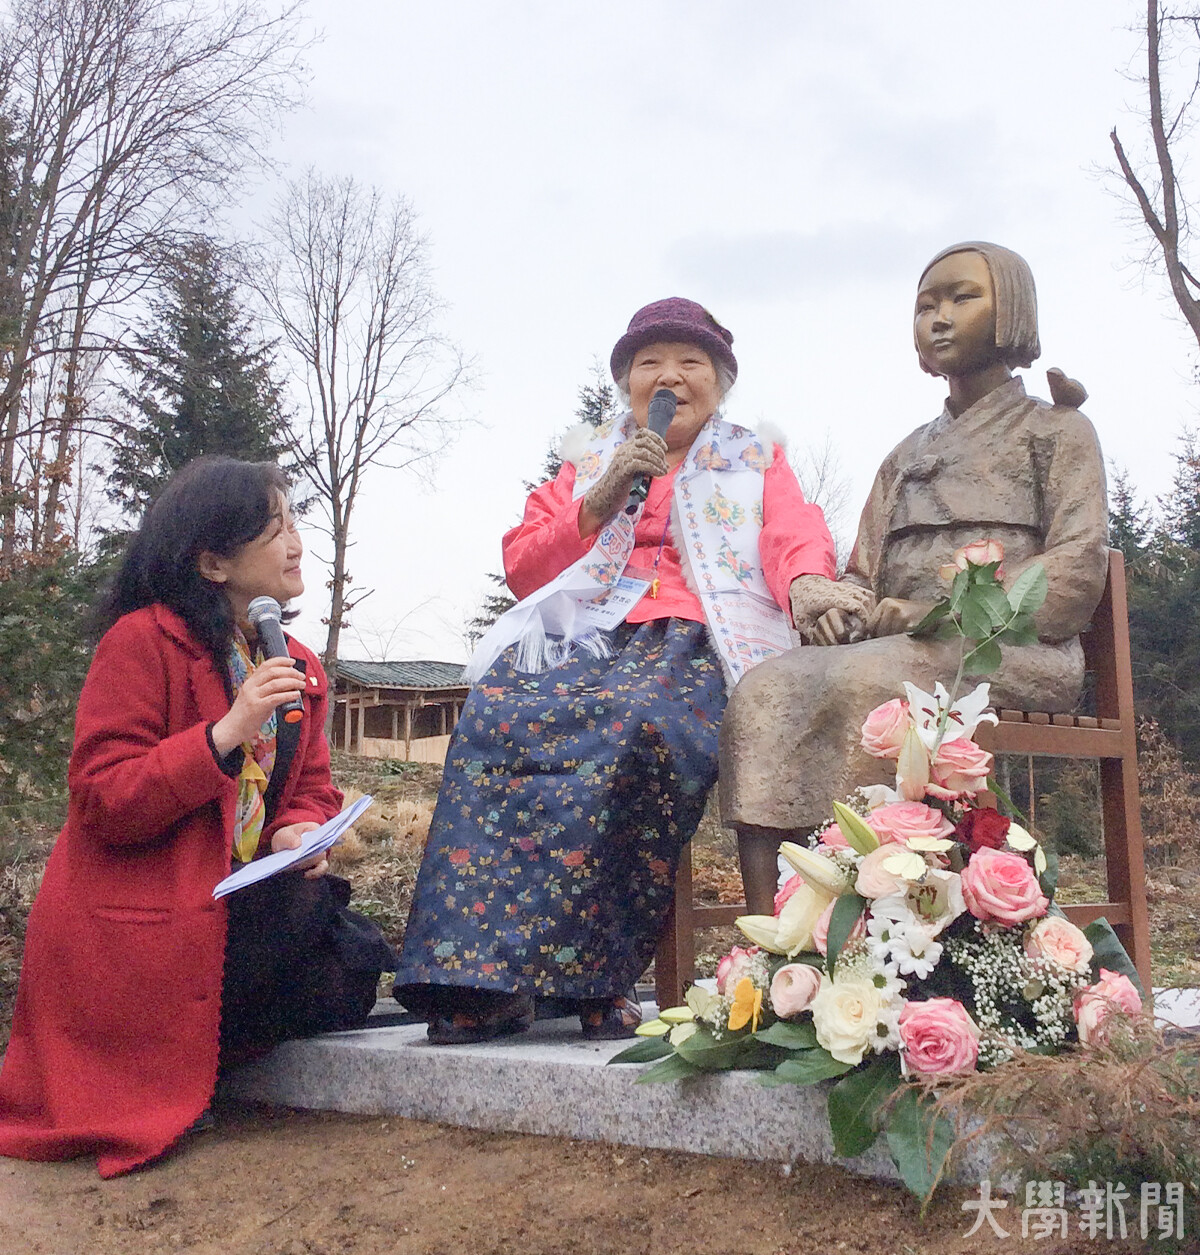 비젠트 공원 평화의 소녀상 제막식 당일, 일본군 '위안부' 피해자 故 안점순 씨가 발언하고 있다. (사진 제공: 풍경세계문화협의회 이은희 대표)